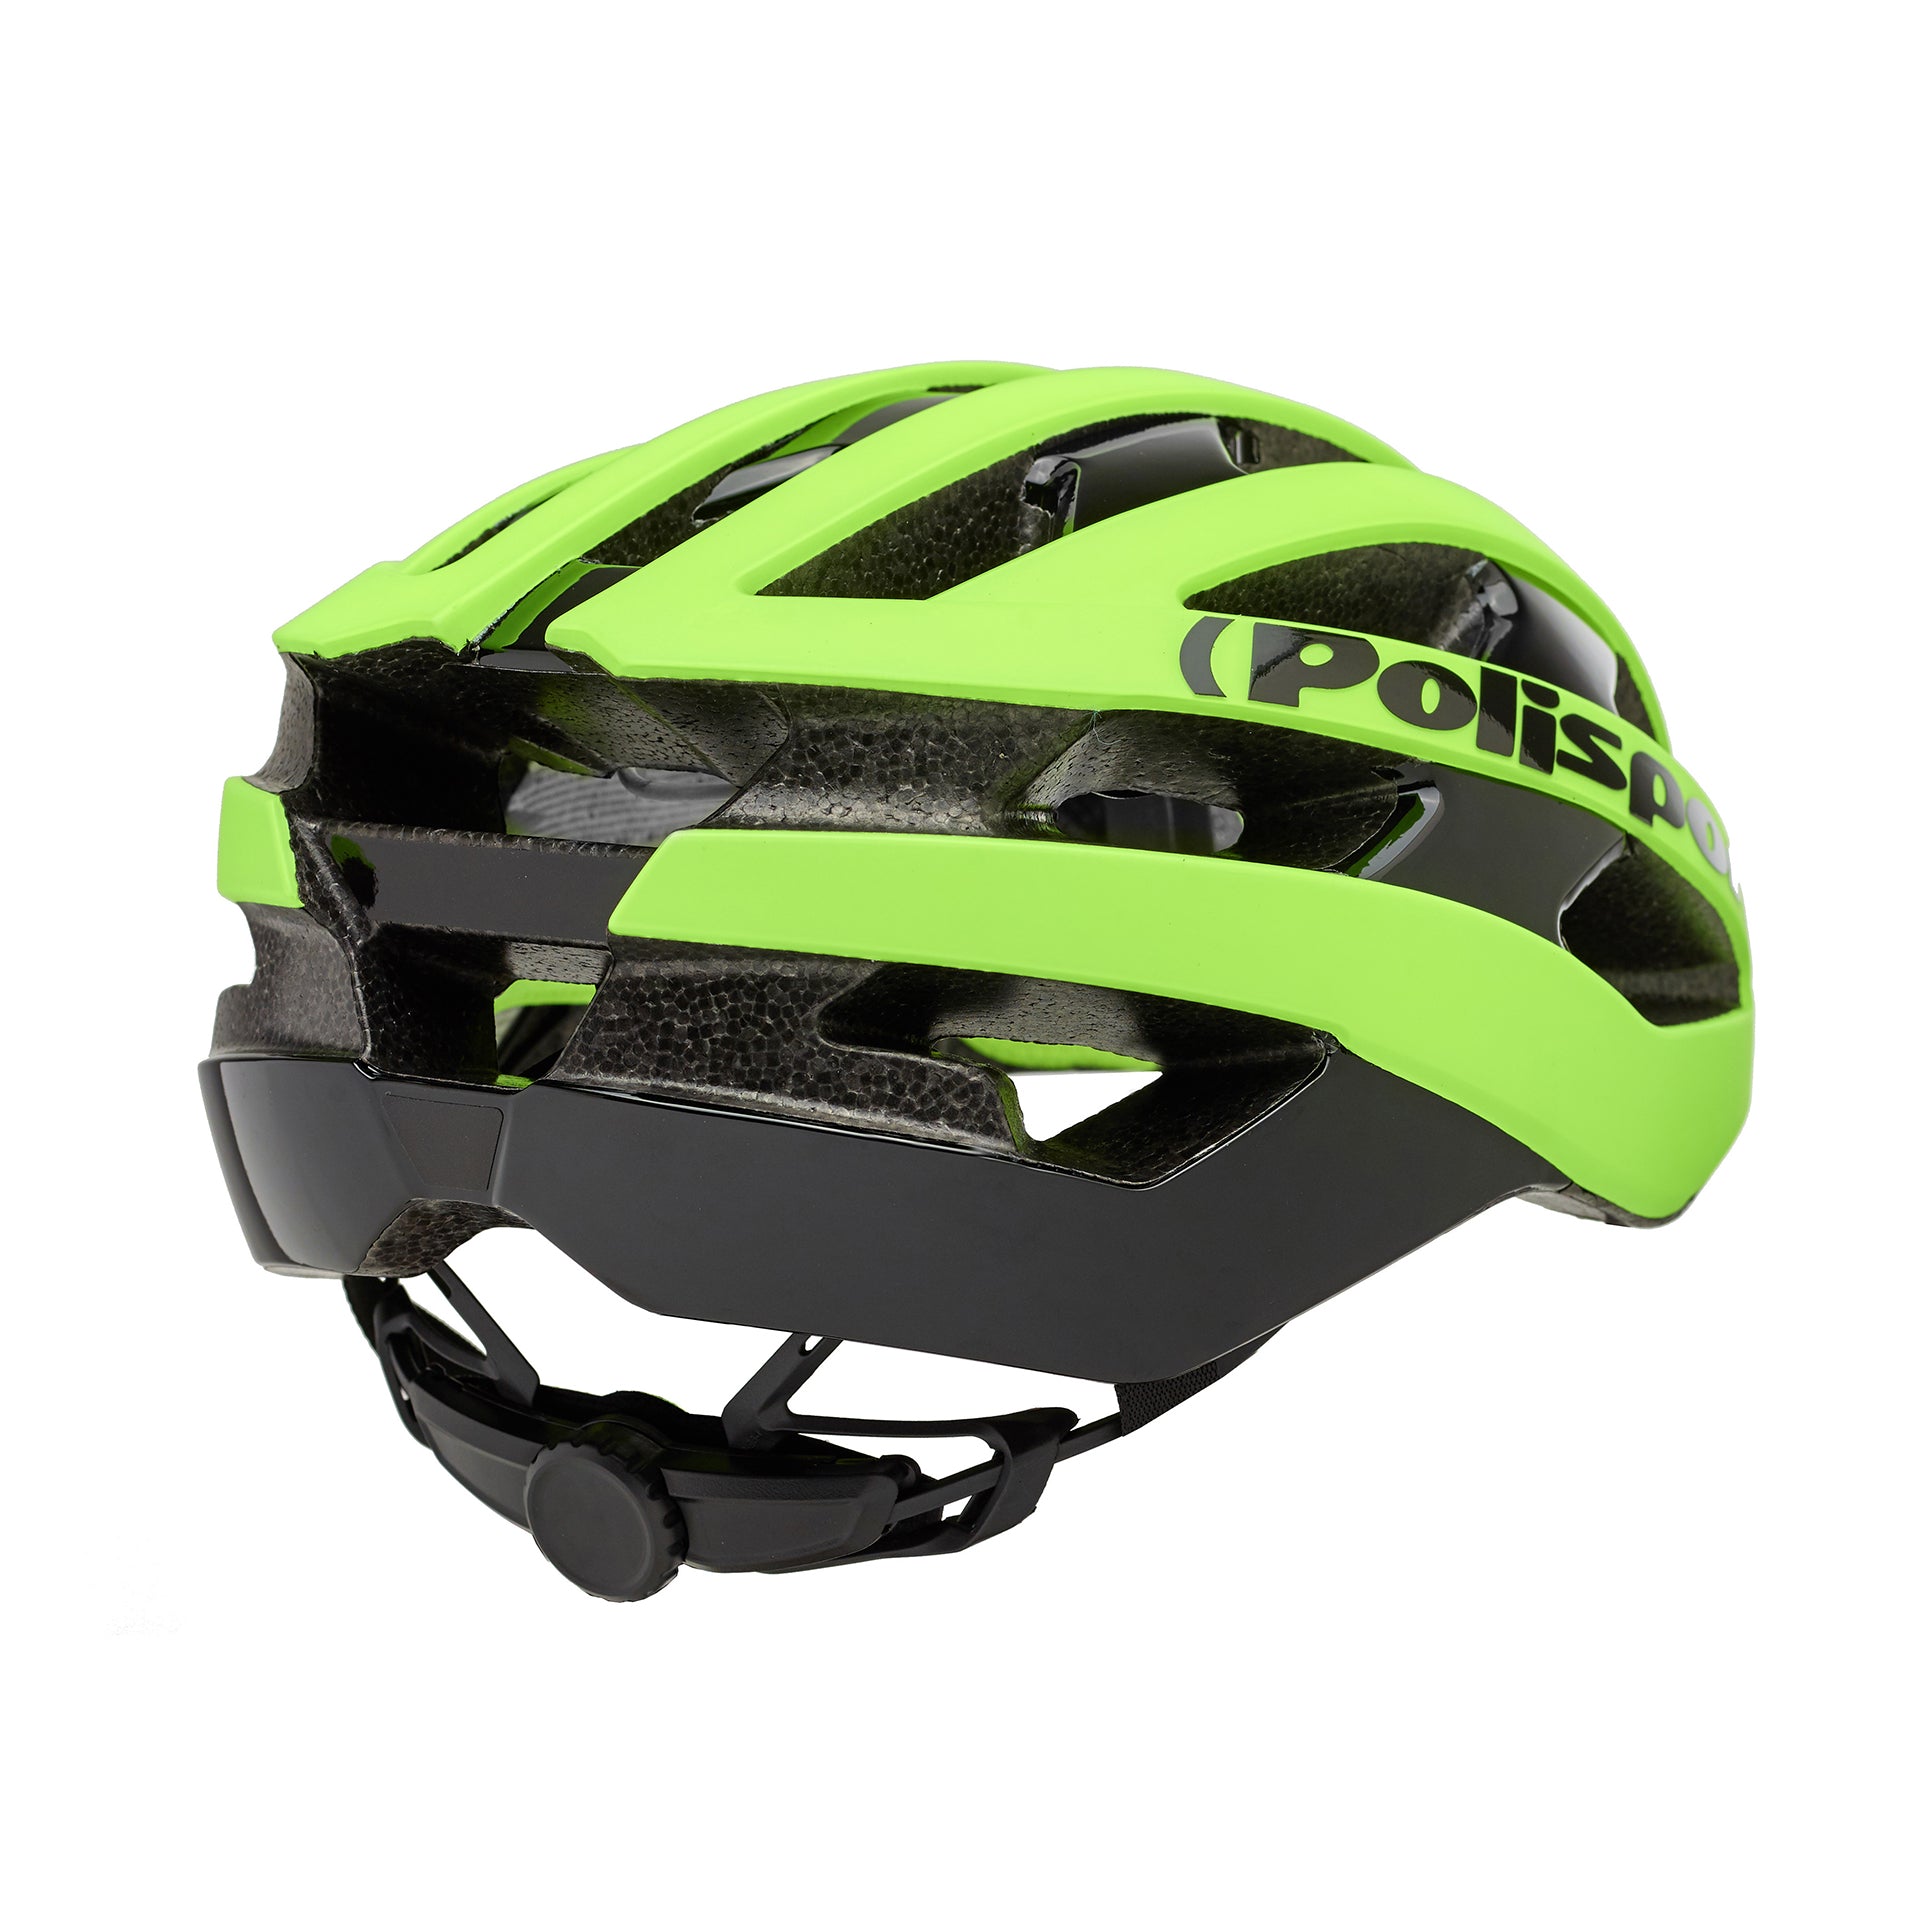 Polisport - Light Pro Helmet